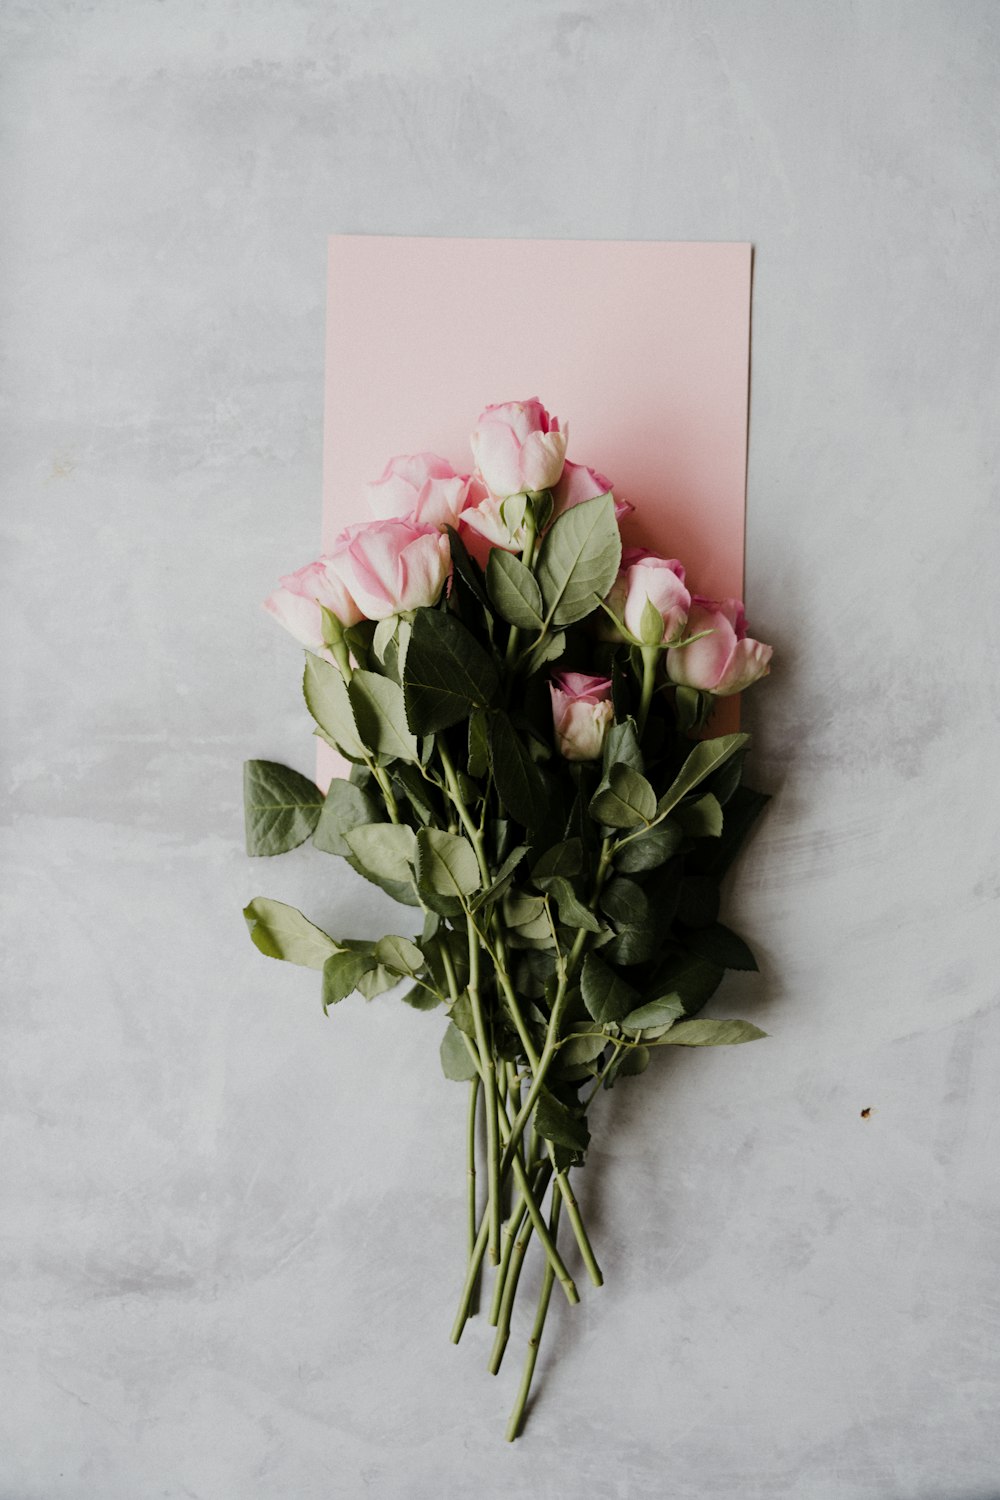 흰 벽에 분홍색 장미